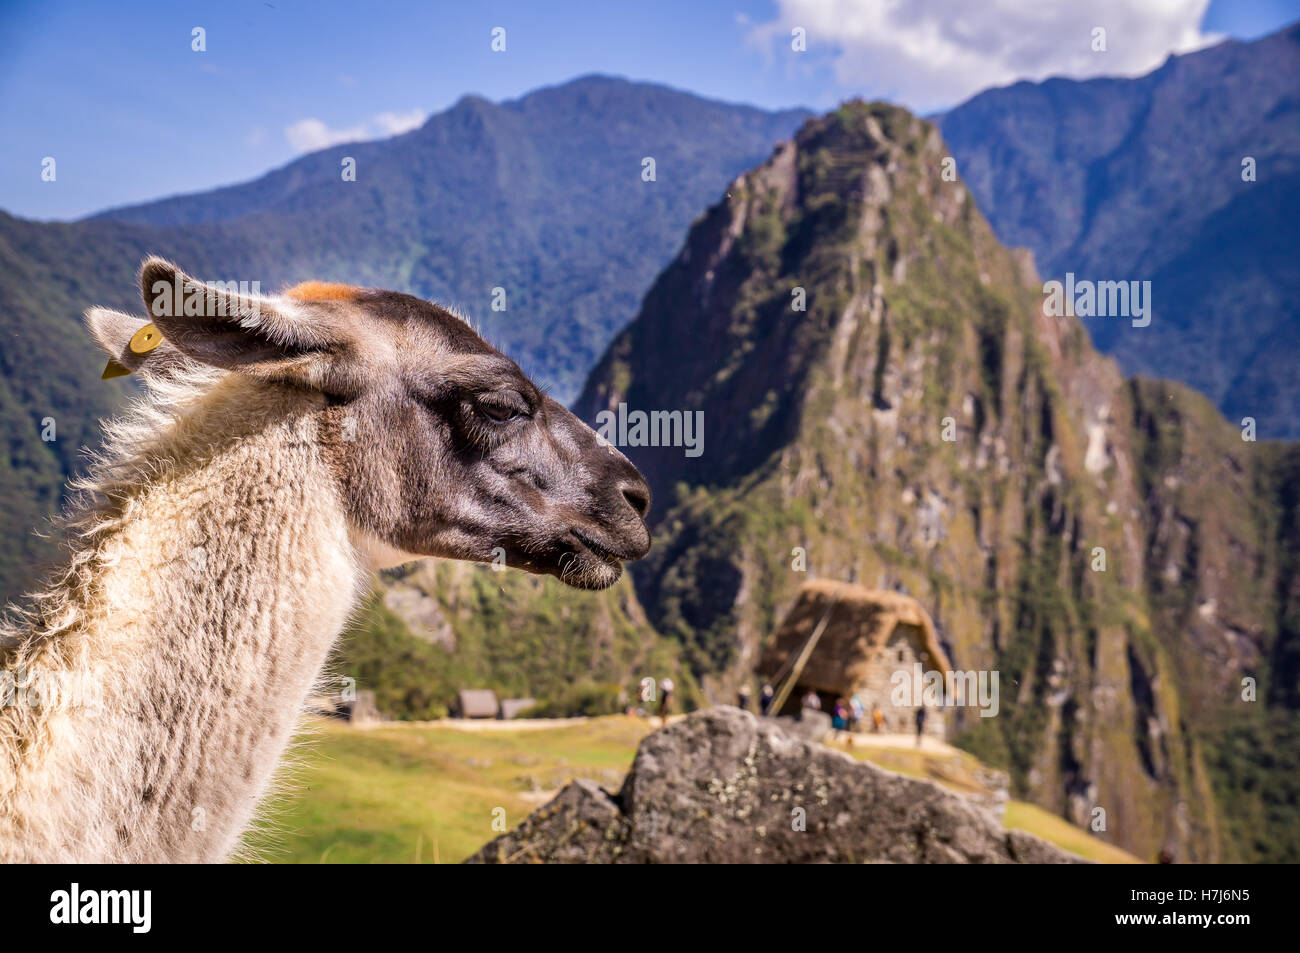 Llama in Machu Picchu Lost Ina City, Peru Stock Photo